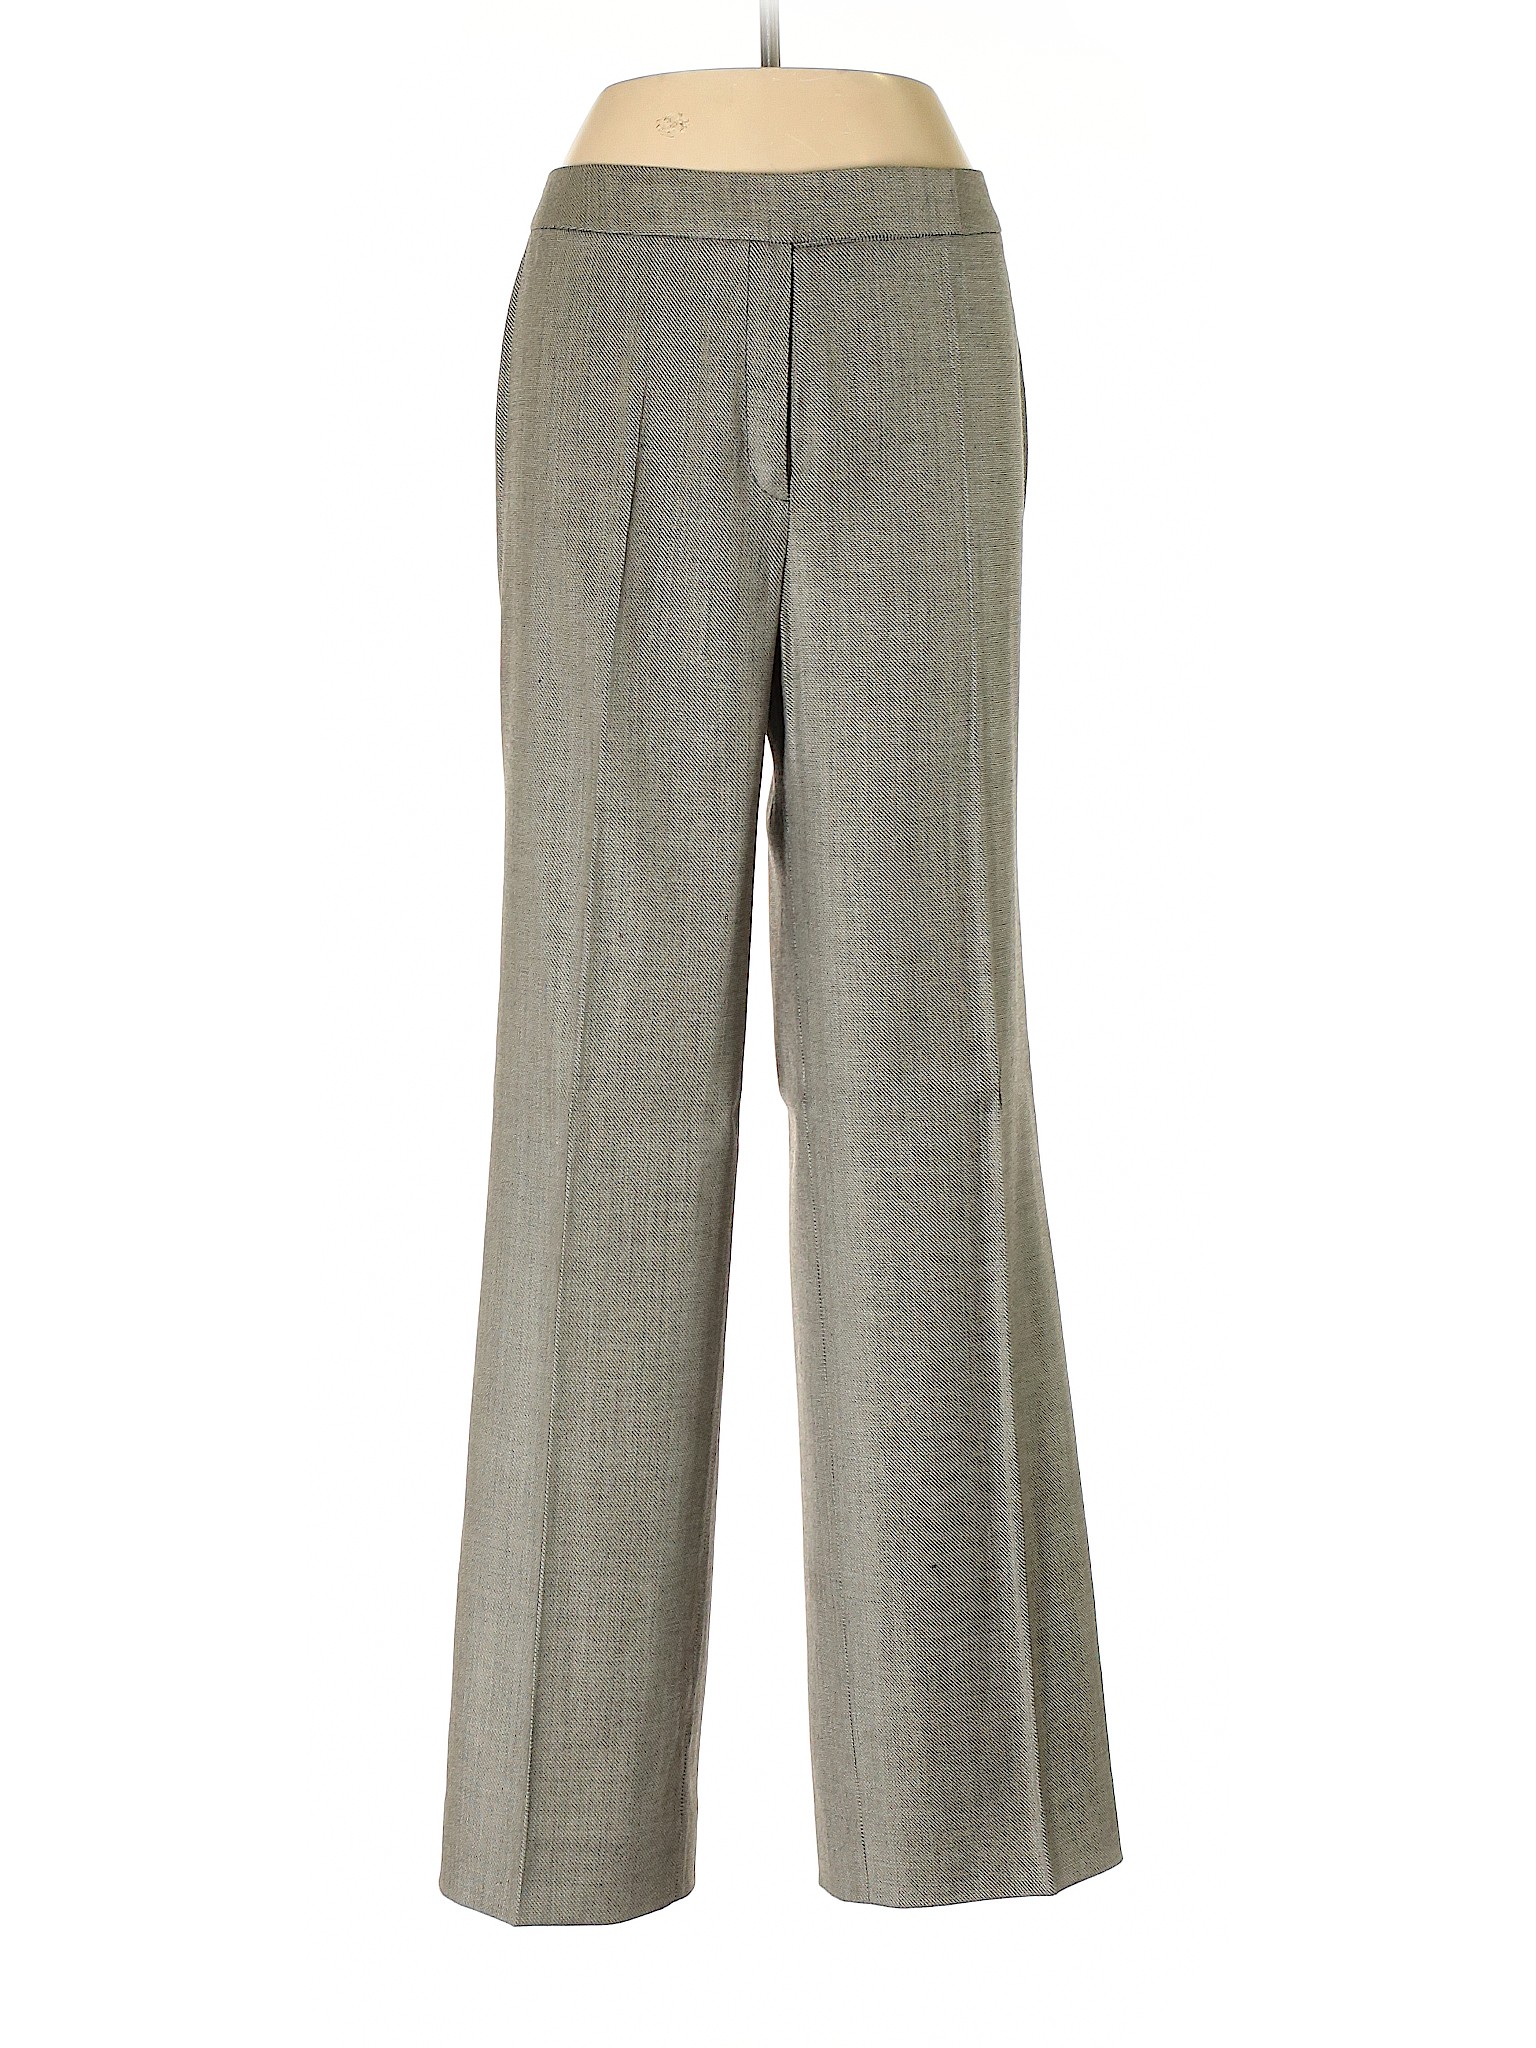 Escada Women Gray Wool Pants 42 eur | eBay